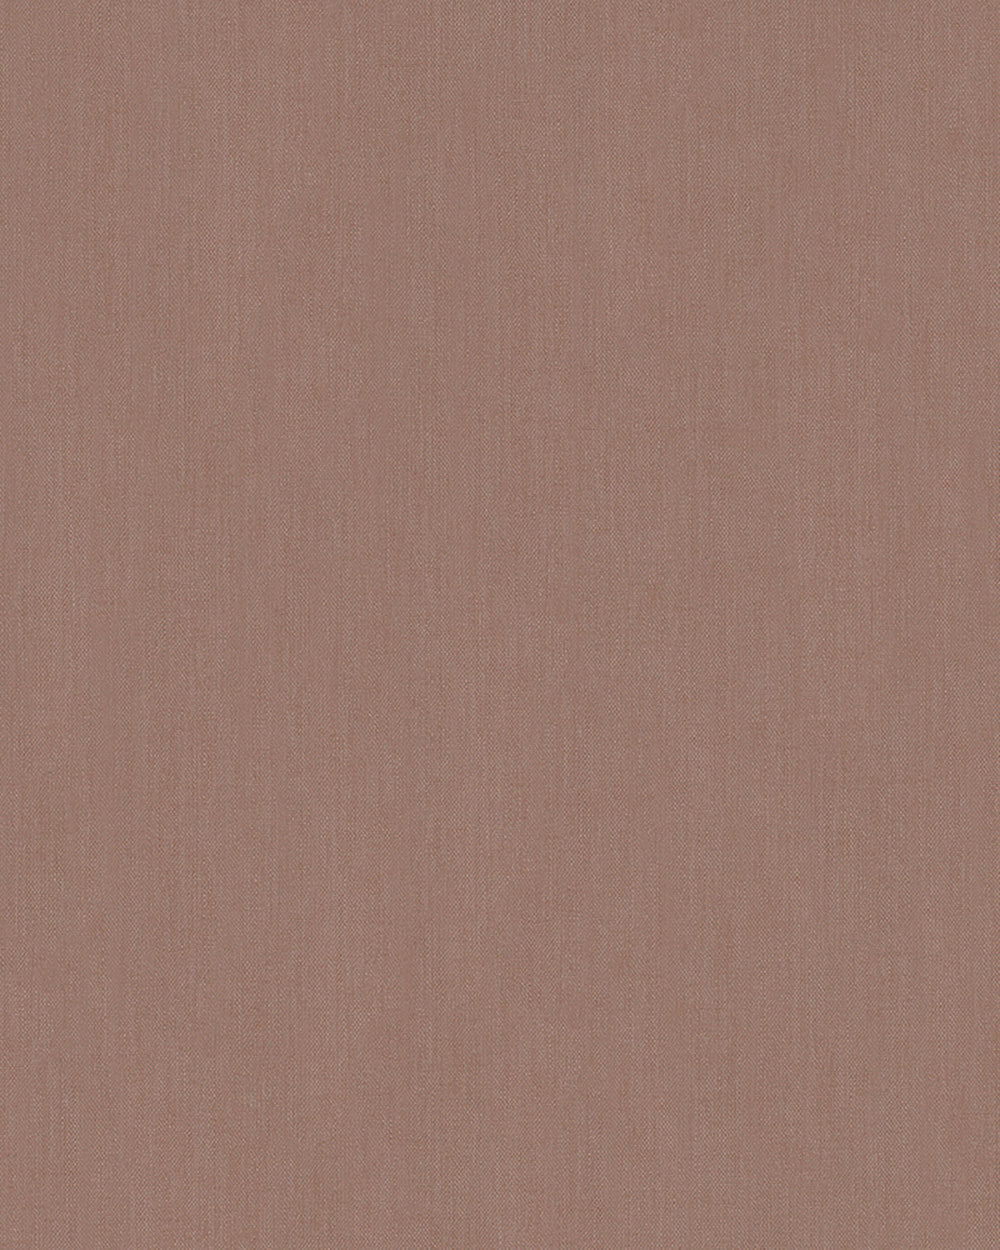 Modernista - Modern Linen plain wallpaper Marburg Roll Light Brown  32225